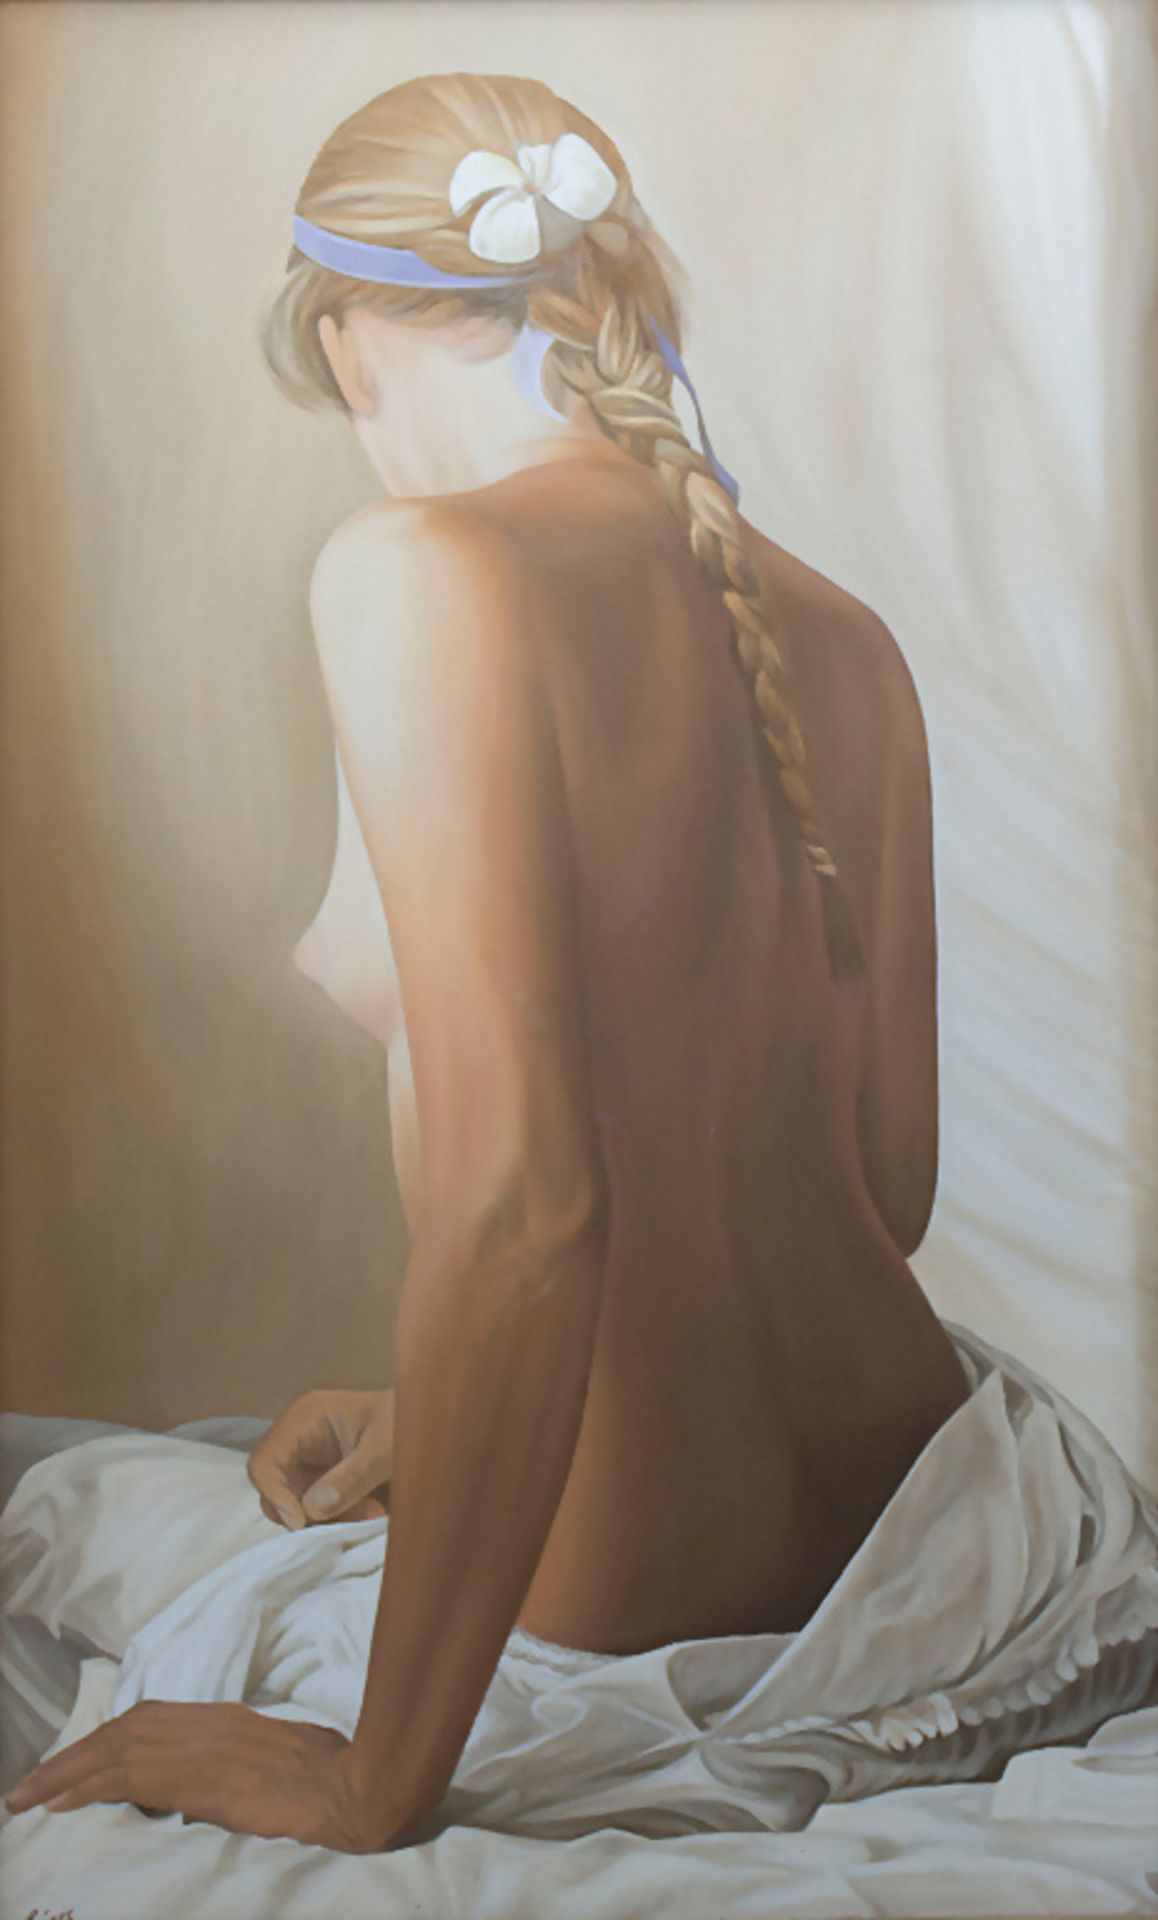 Michael Zeiger (21. Jh.), 'Sitzender weiblicher Akt' / 'A sitting female nude', 2000